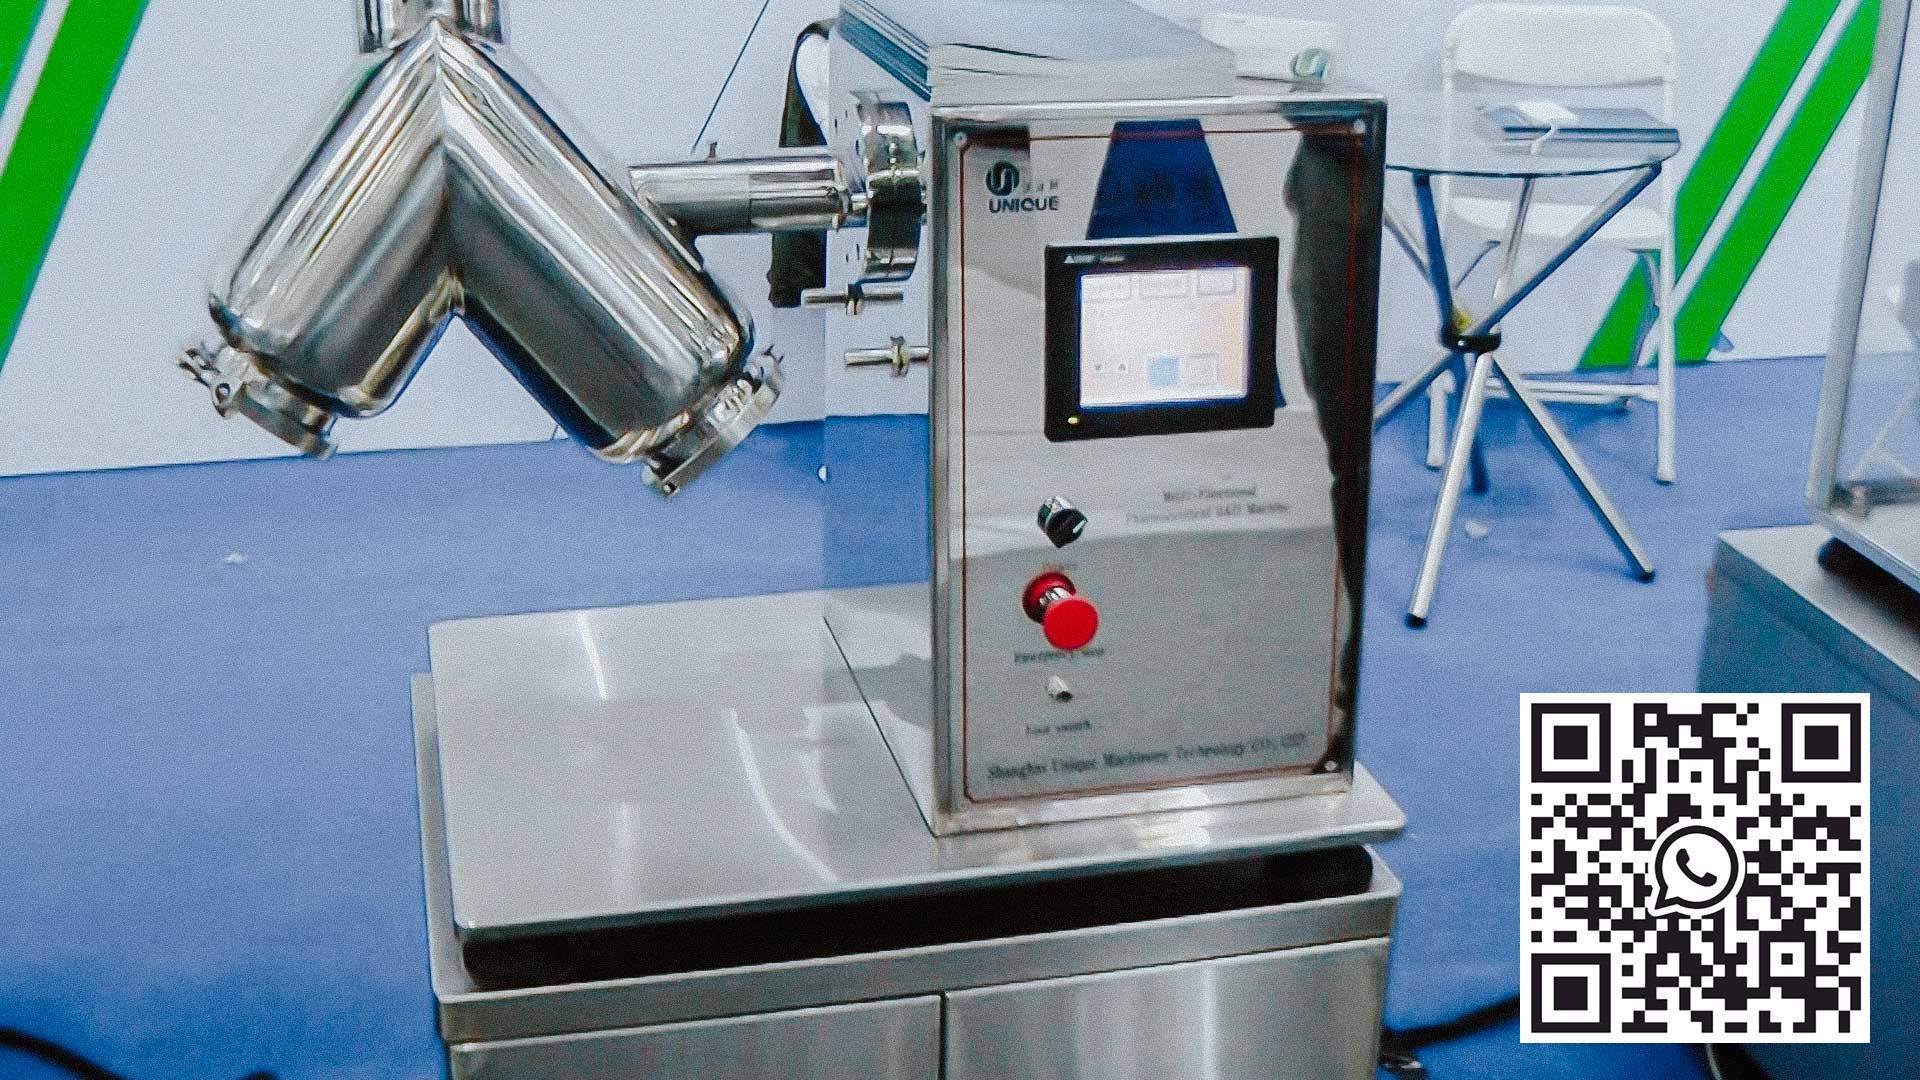 V-mixer untuk menyiapkan campuran bubuk yang digunakan untuk pembuatan obat